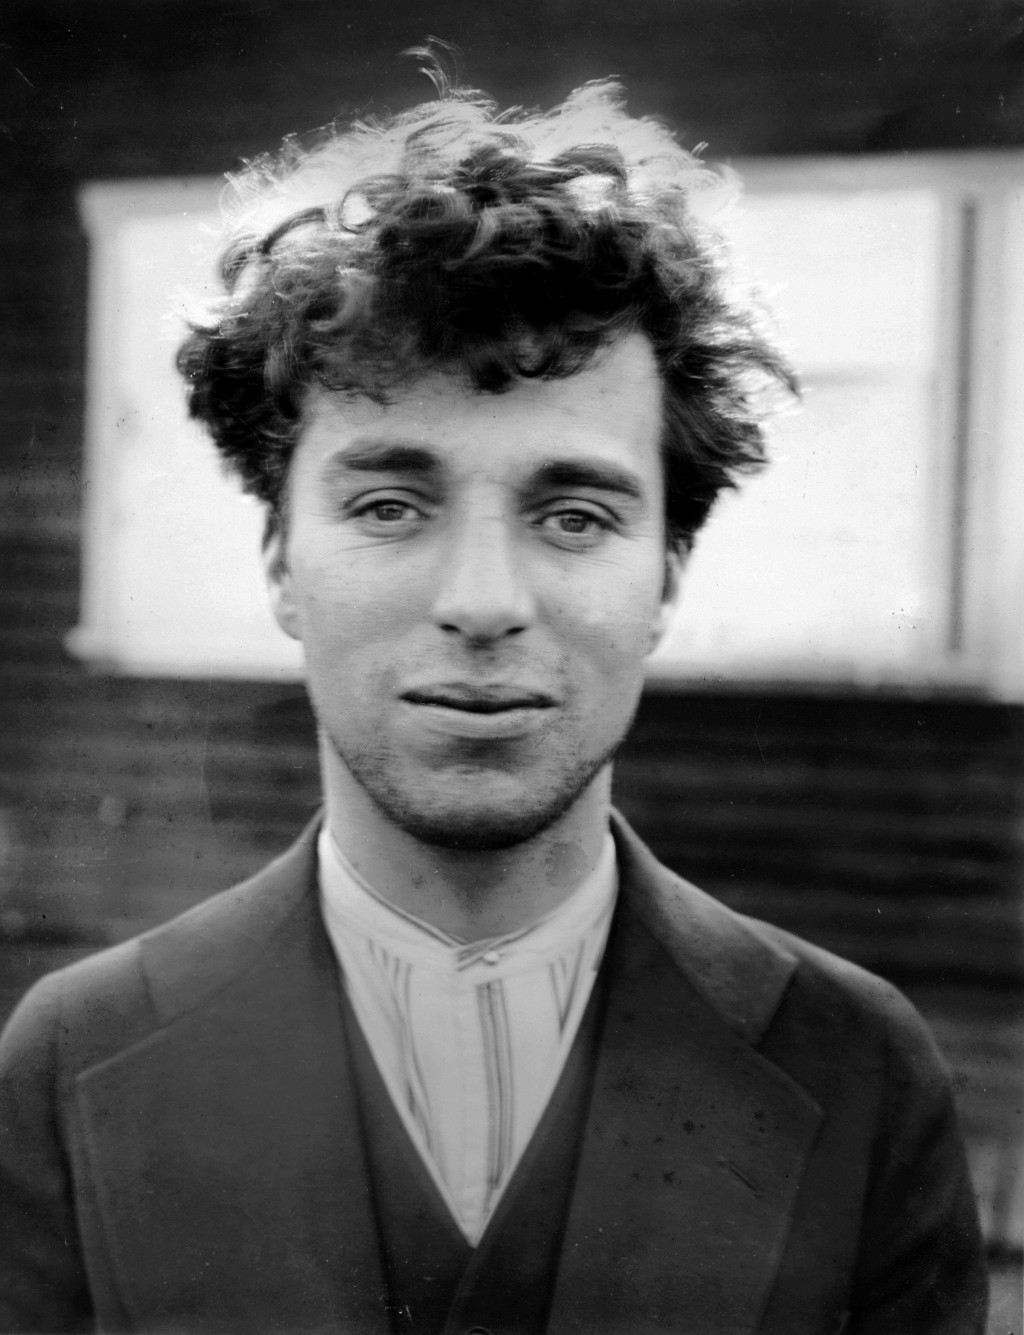 15. Charlie Chaplin at age 27, 1916